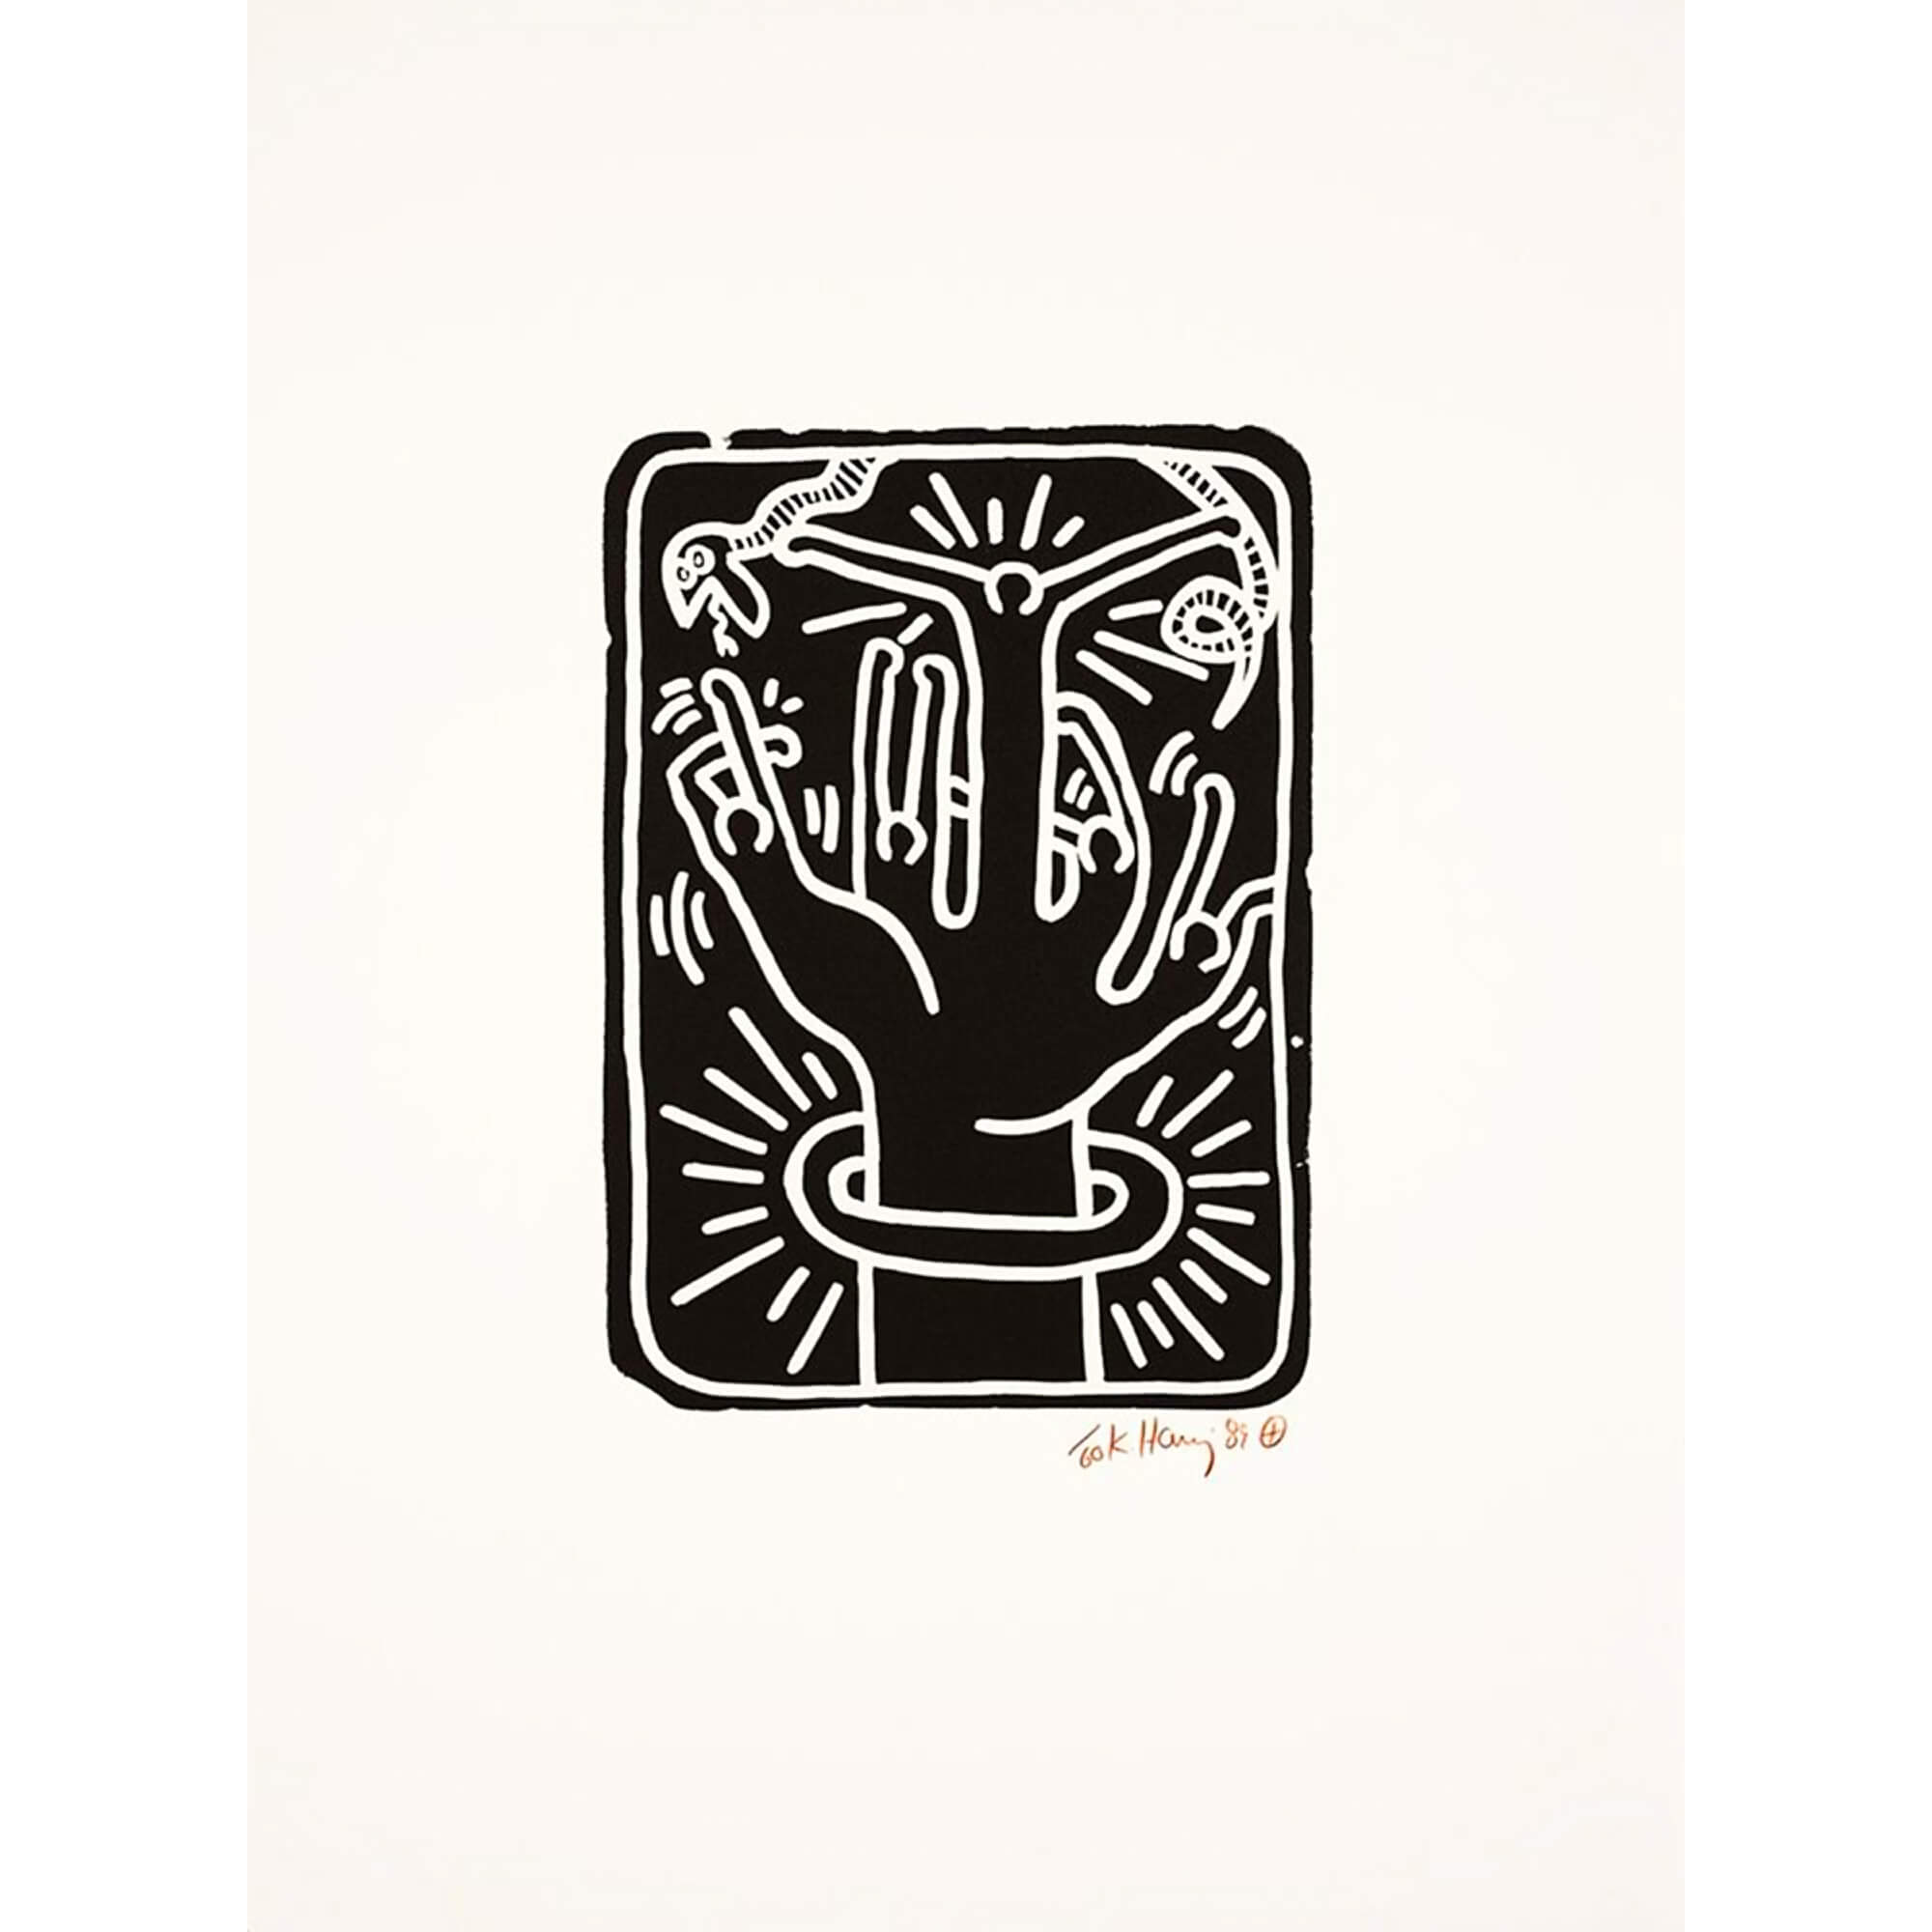 Keith Haring-Stones 2 - Keith Haring-art print